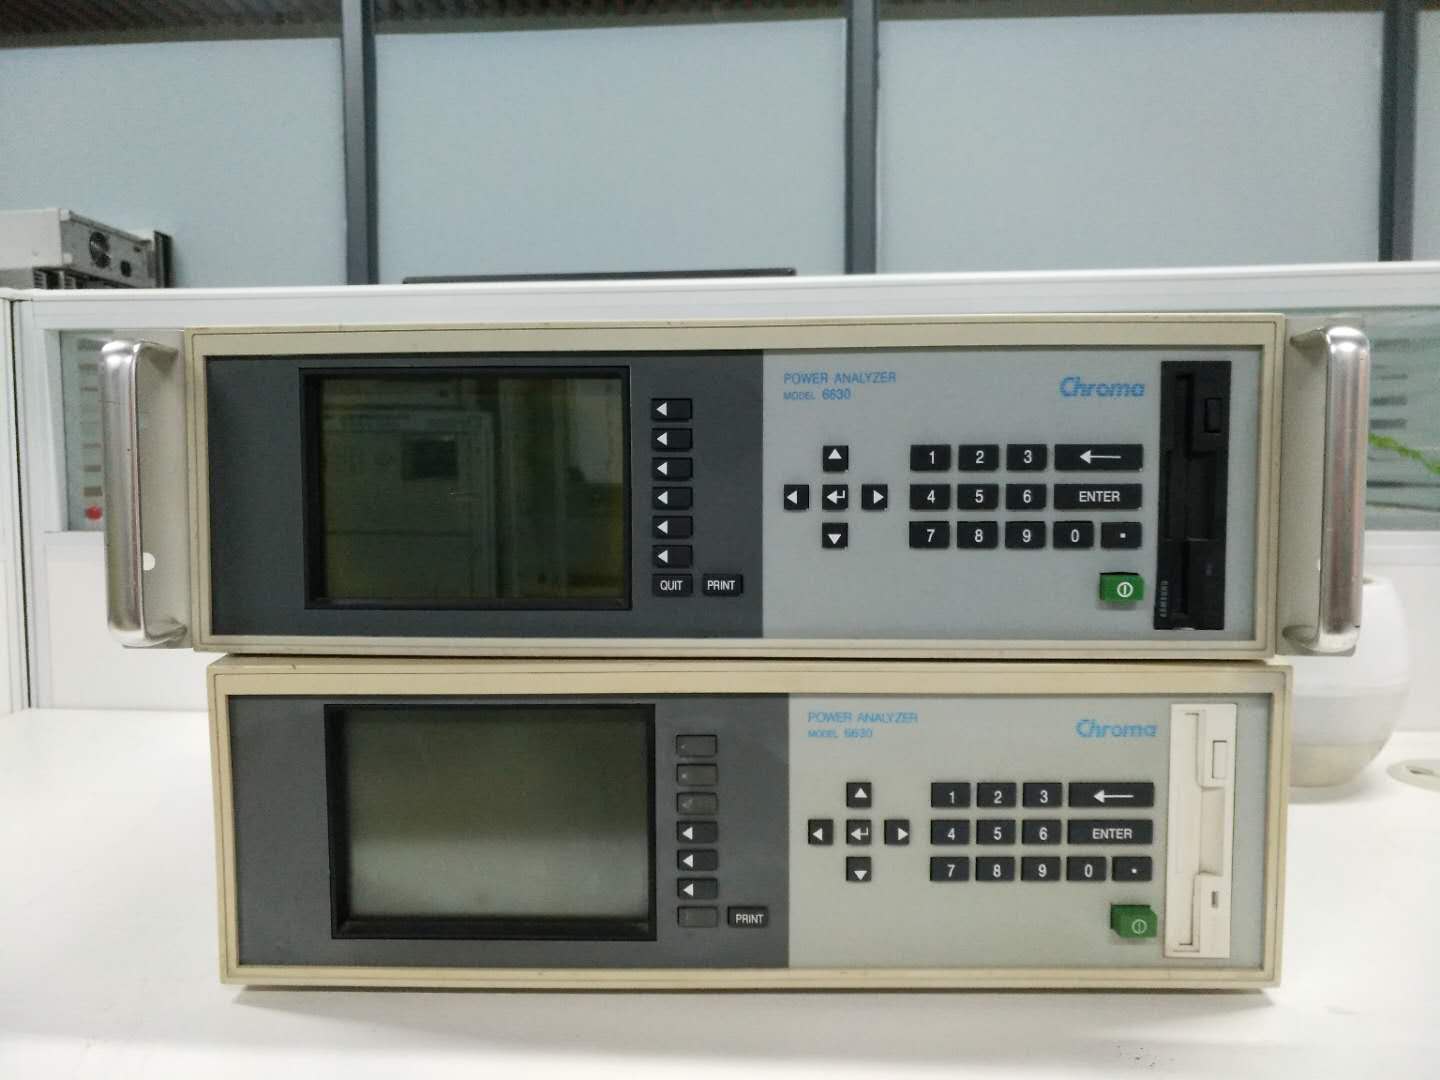 chroma6630谐波功率分析仪